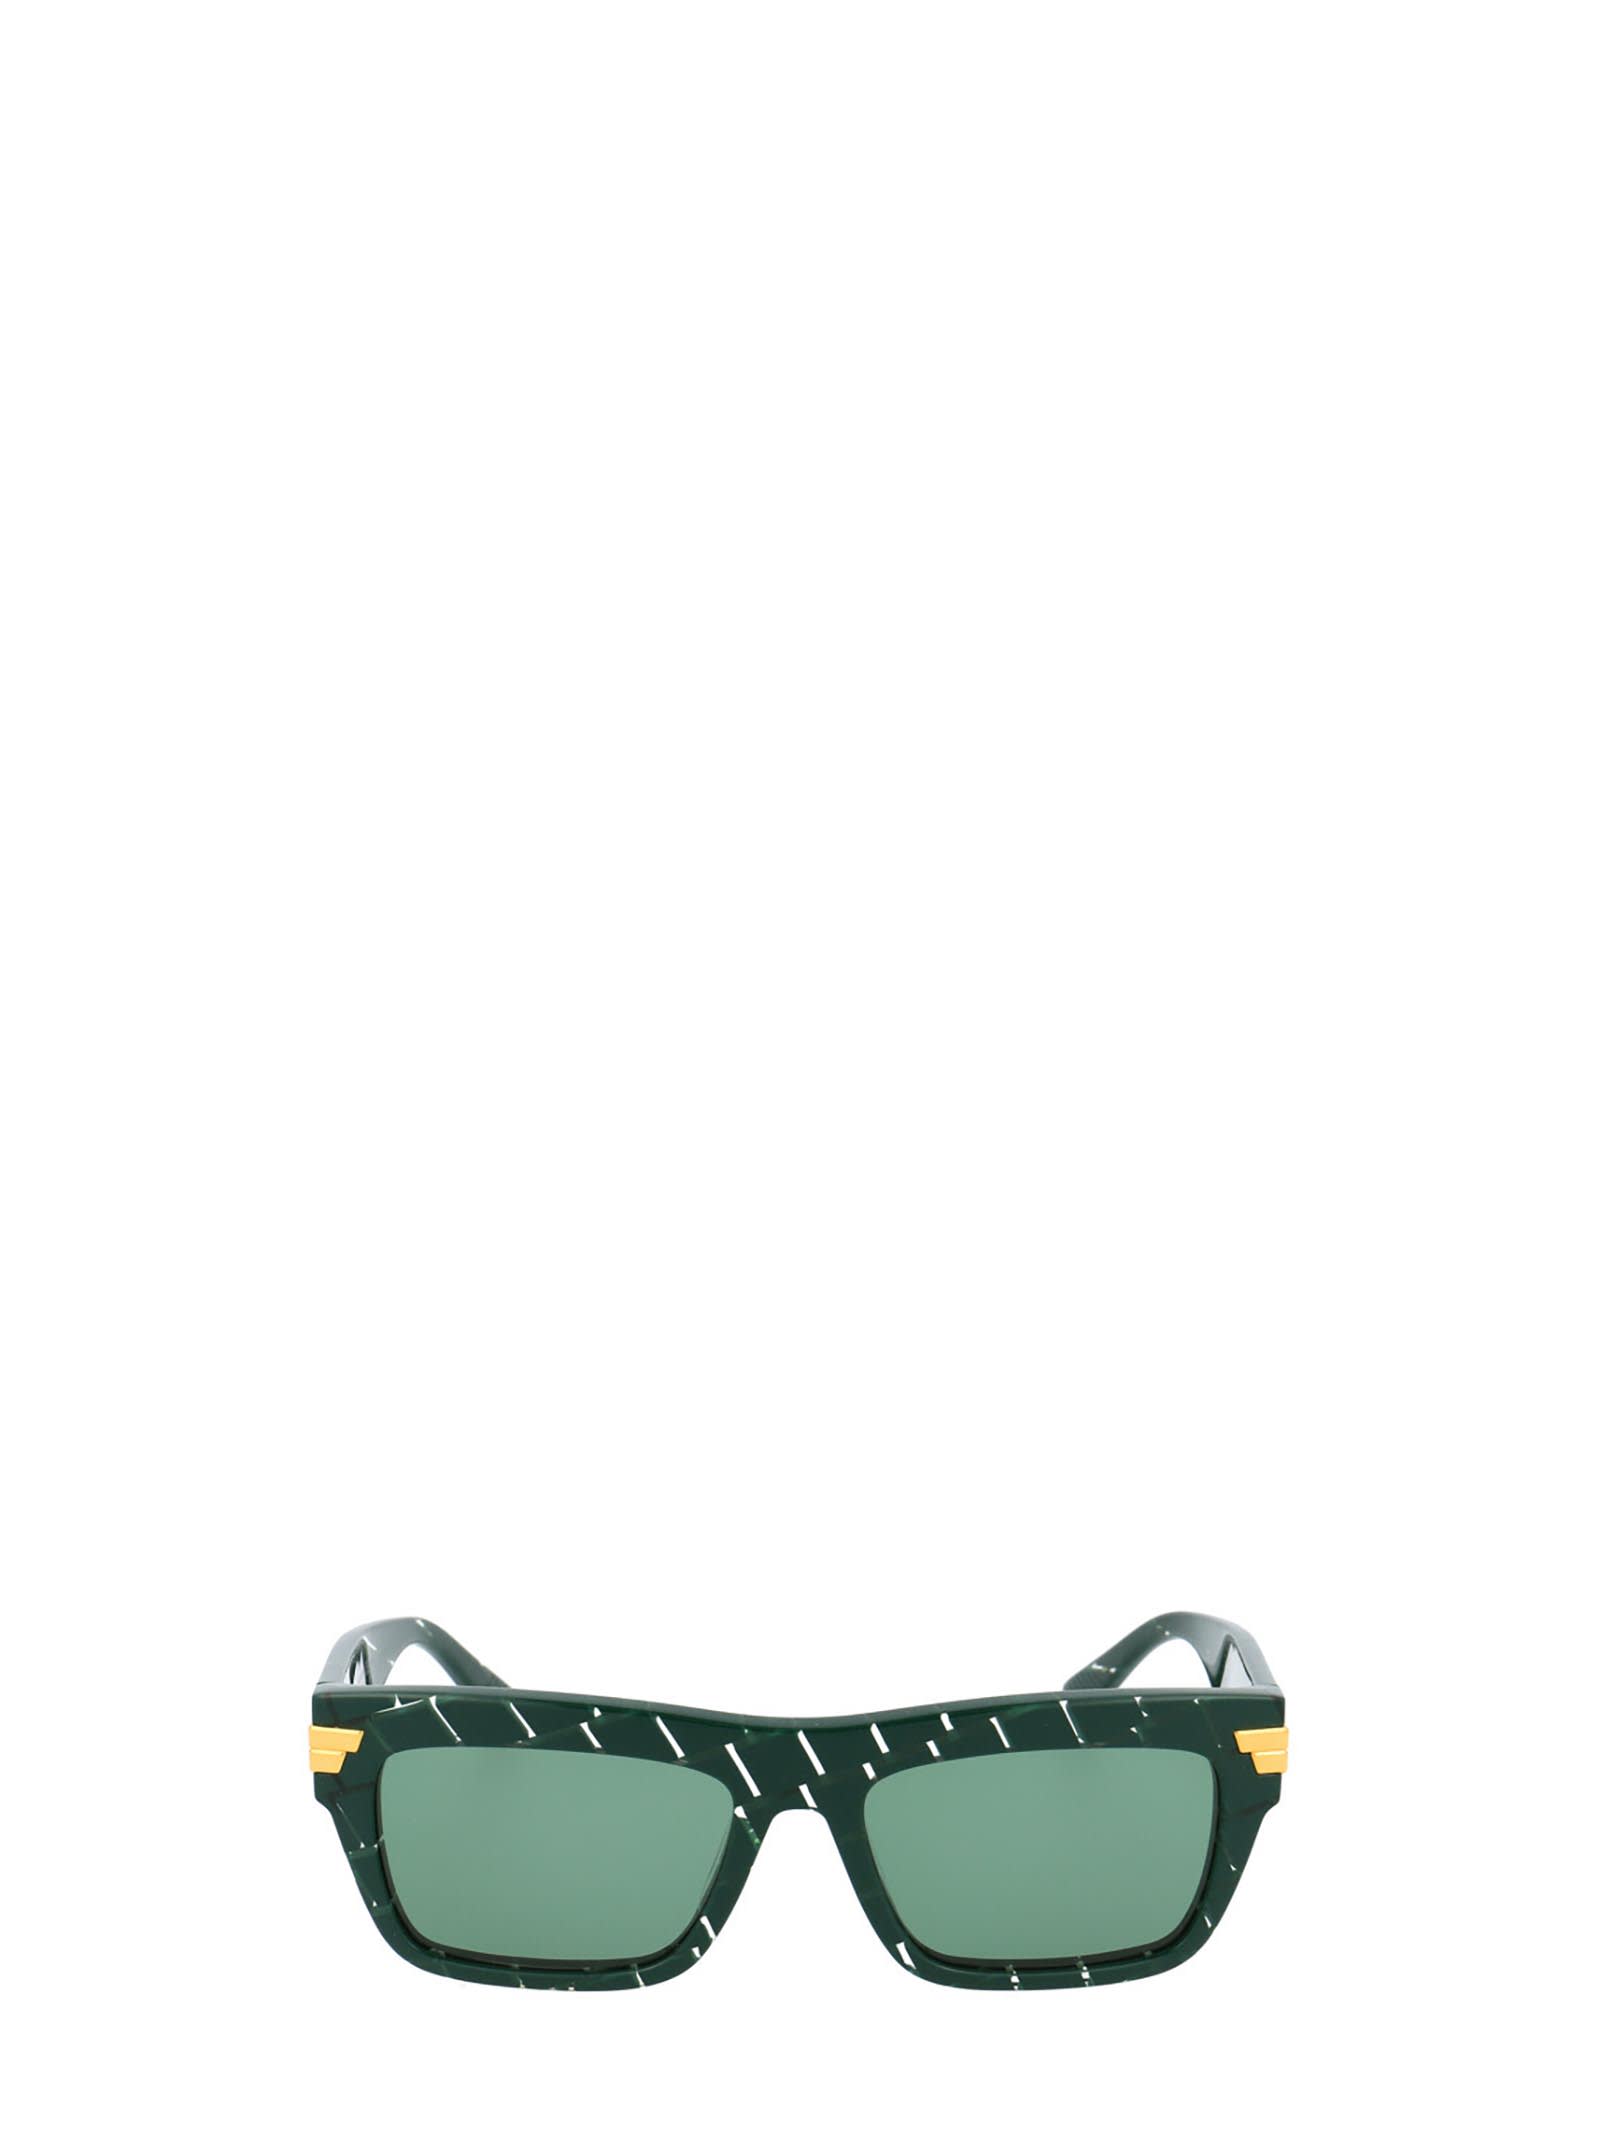 Bottega Veneta Bottega Veneta Bv1058s Green Sunglasses